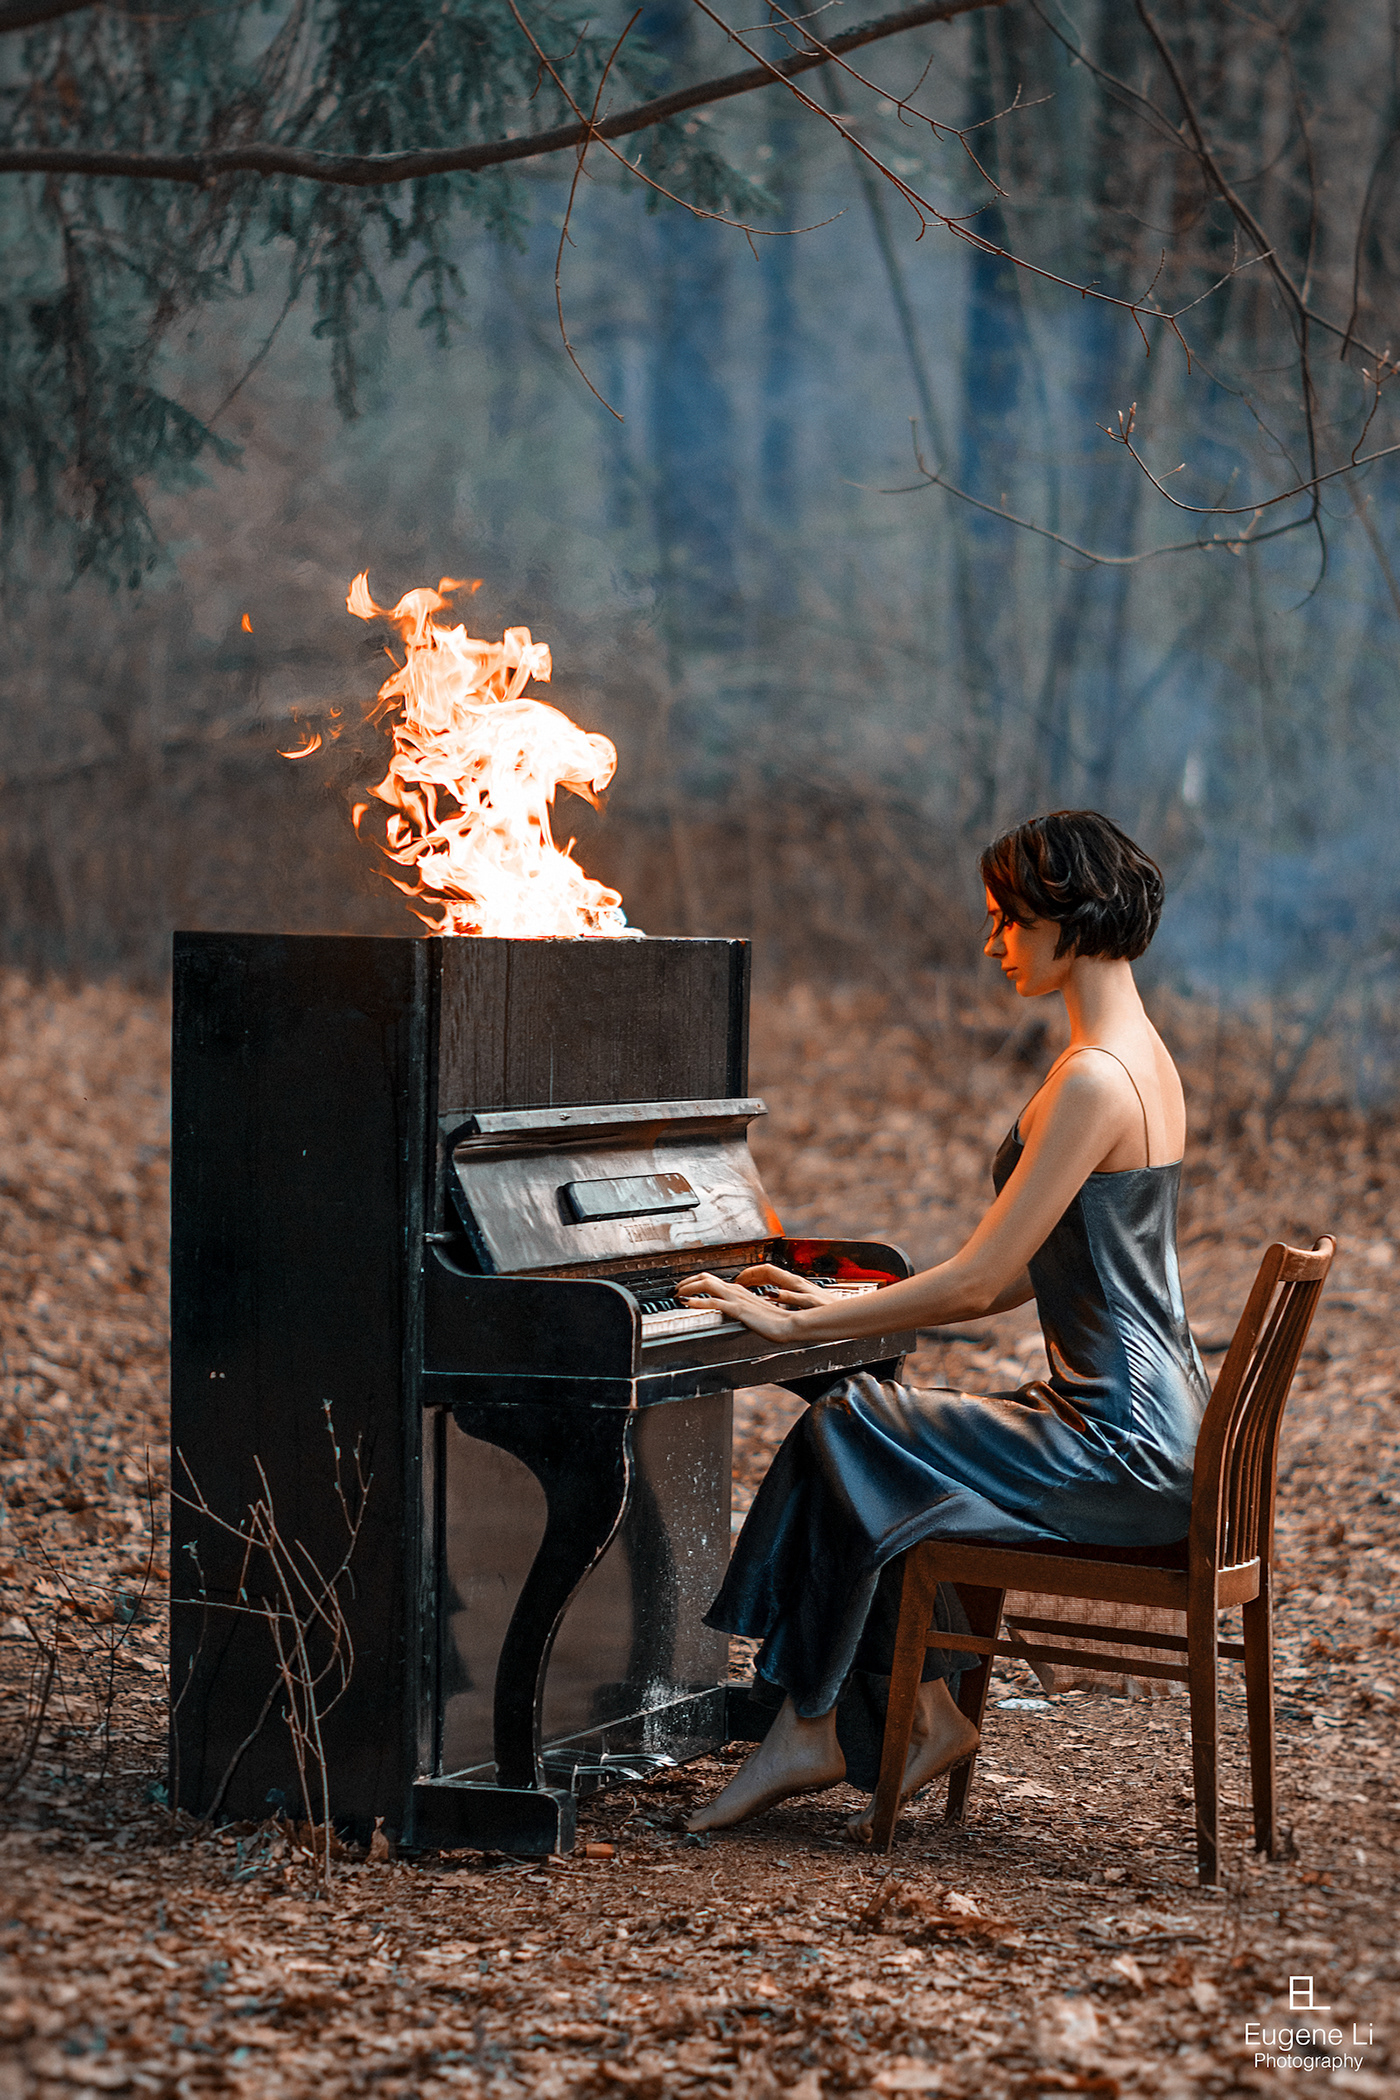 Piano fire burn man woman